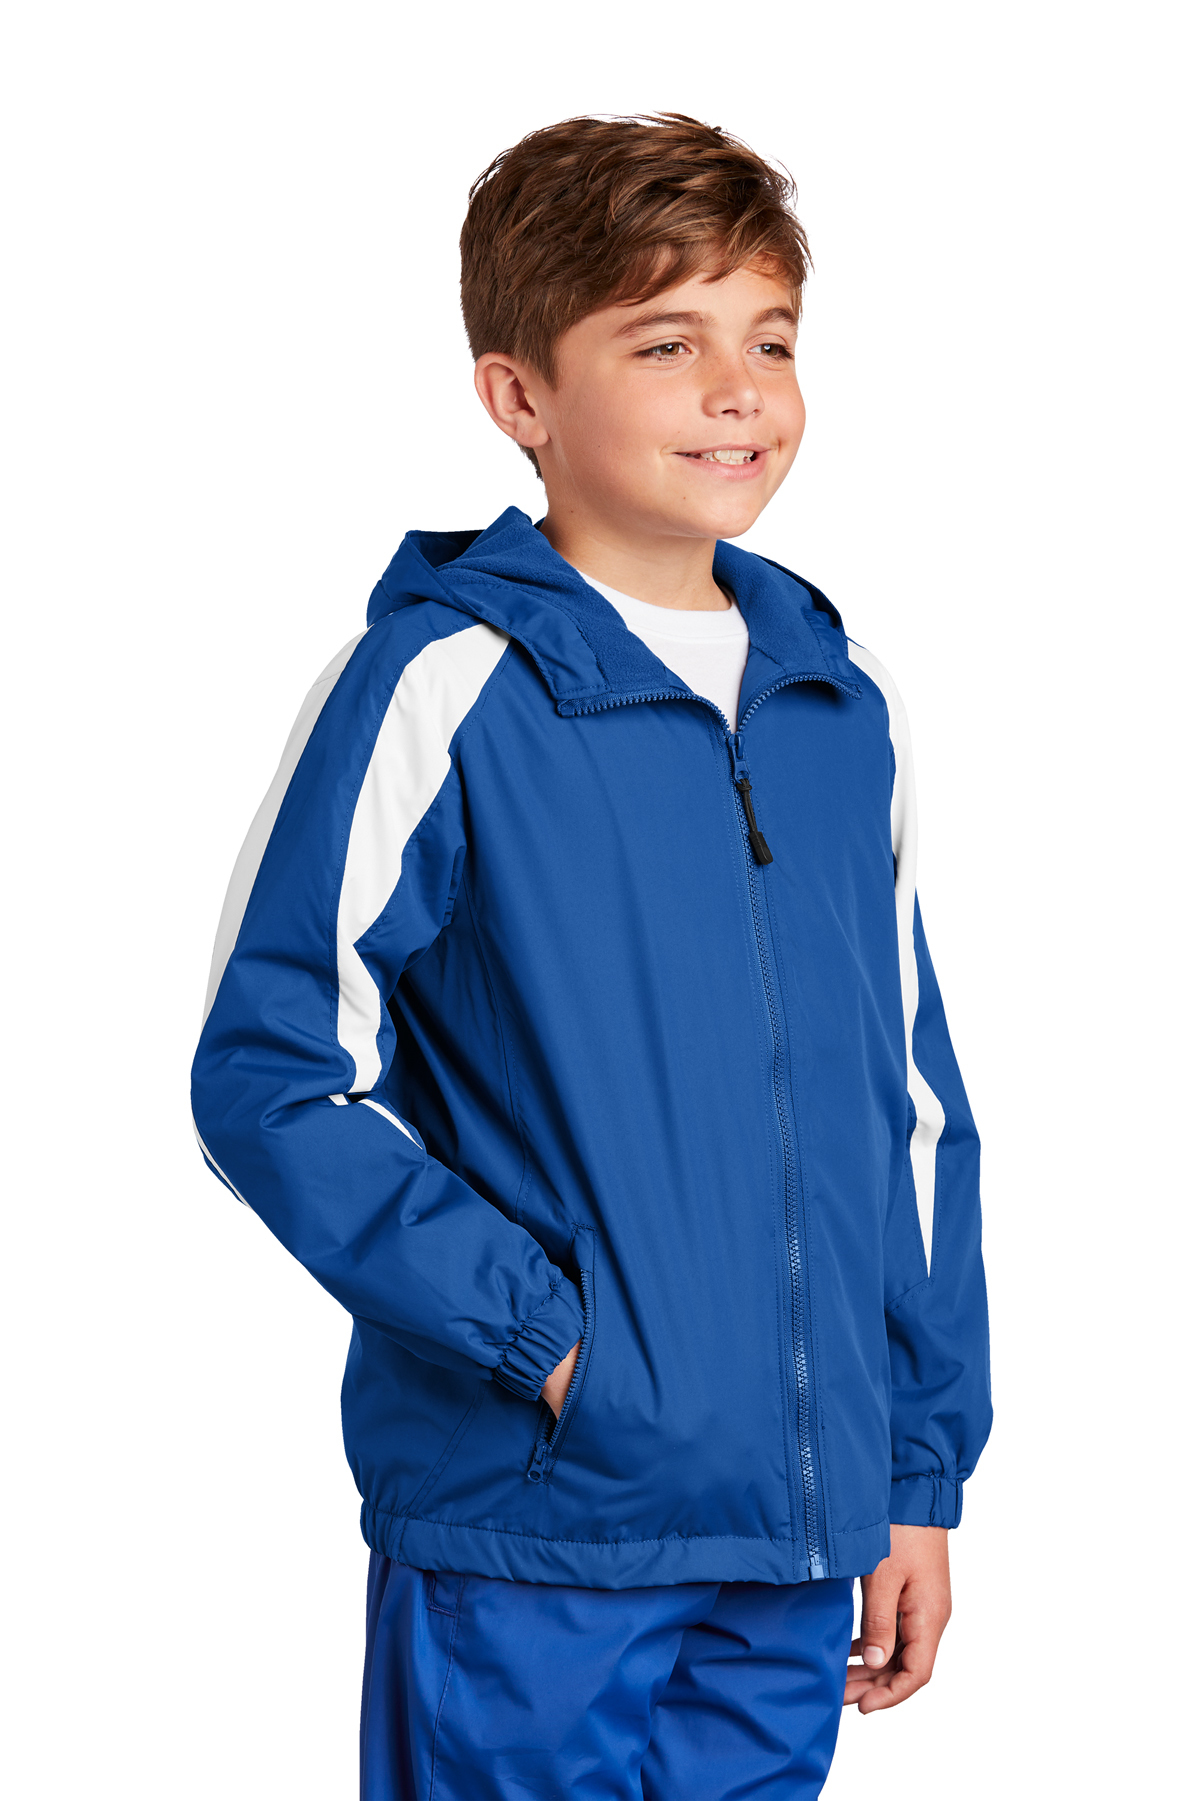 Sport-Tek Youth Fleece-Lined Colorblock Jacket | Product | SanMar